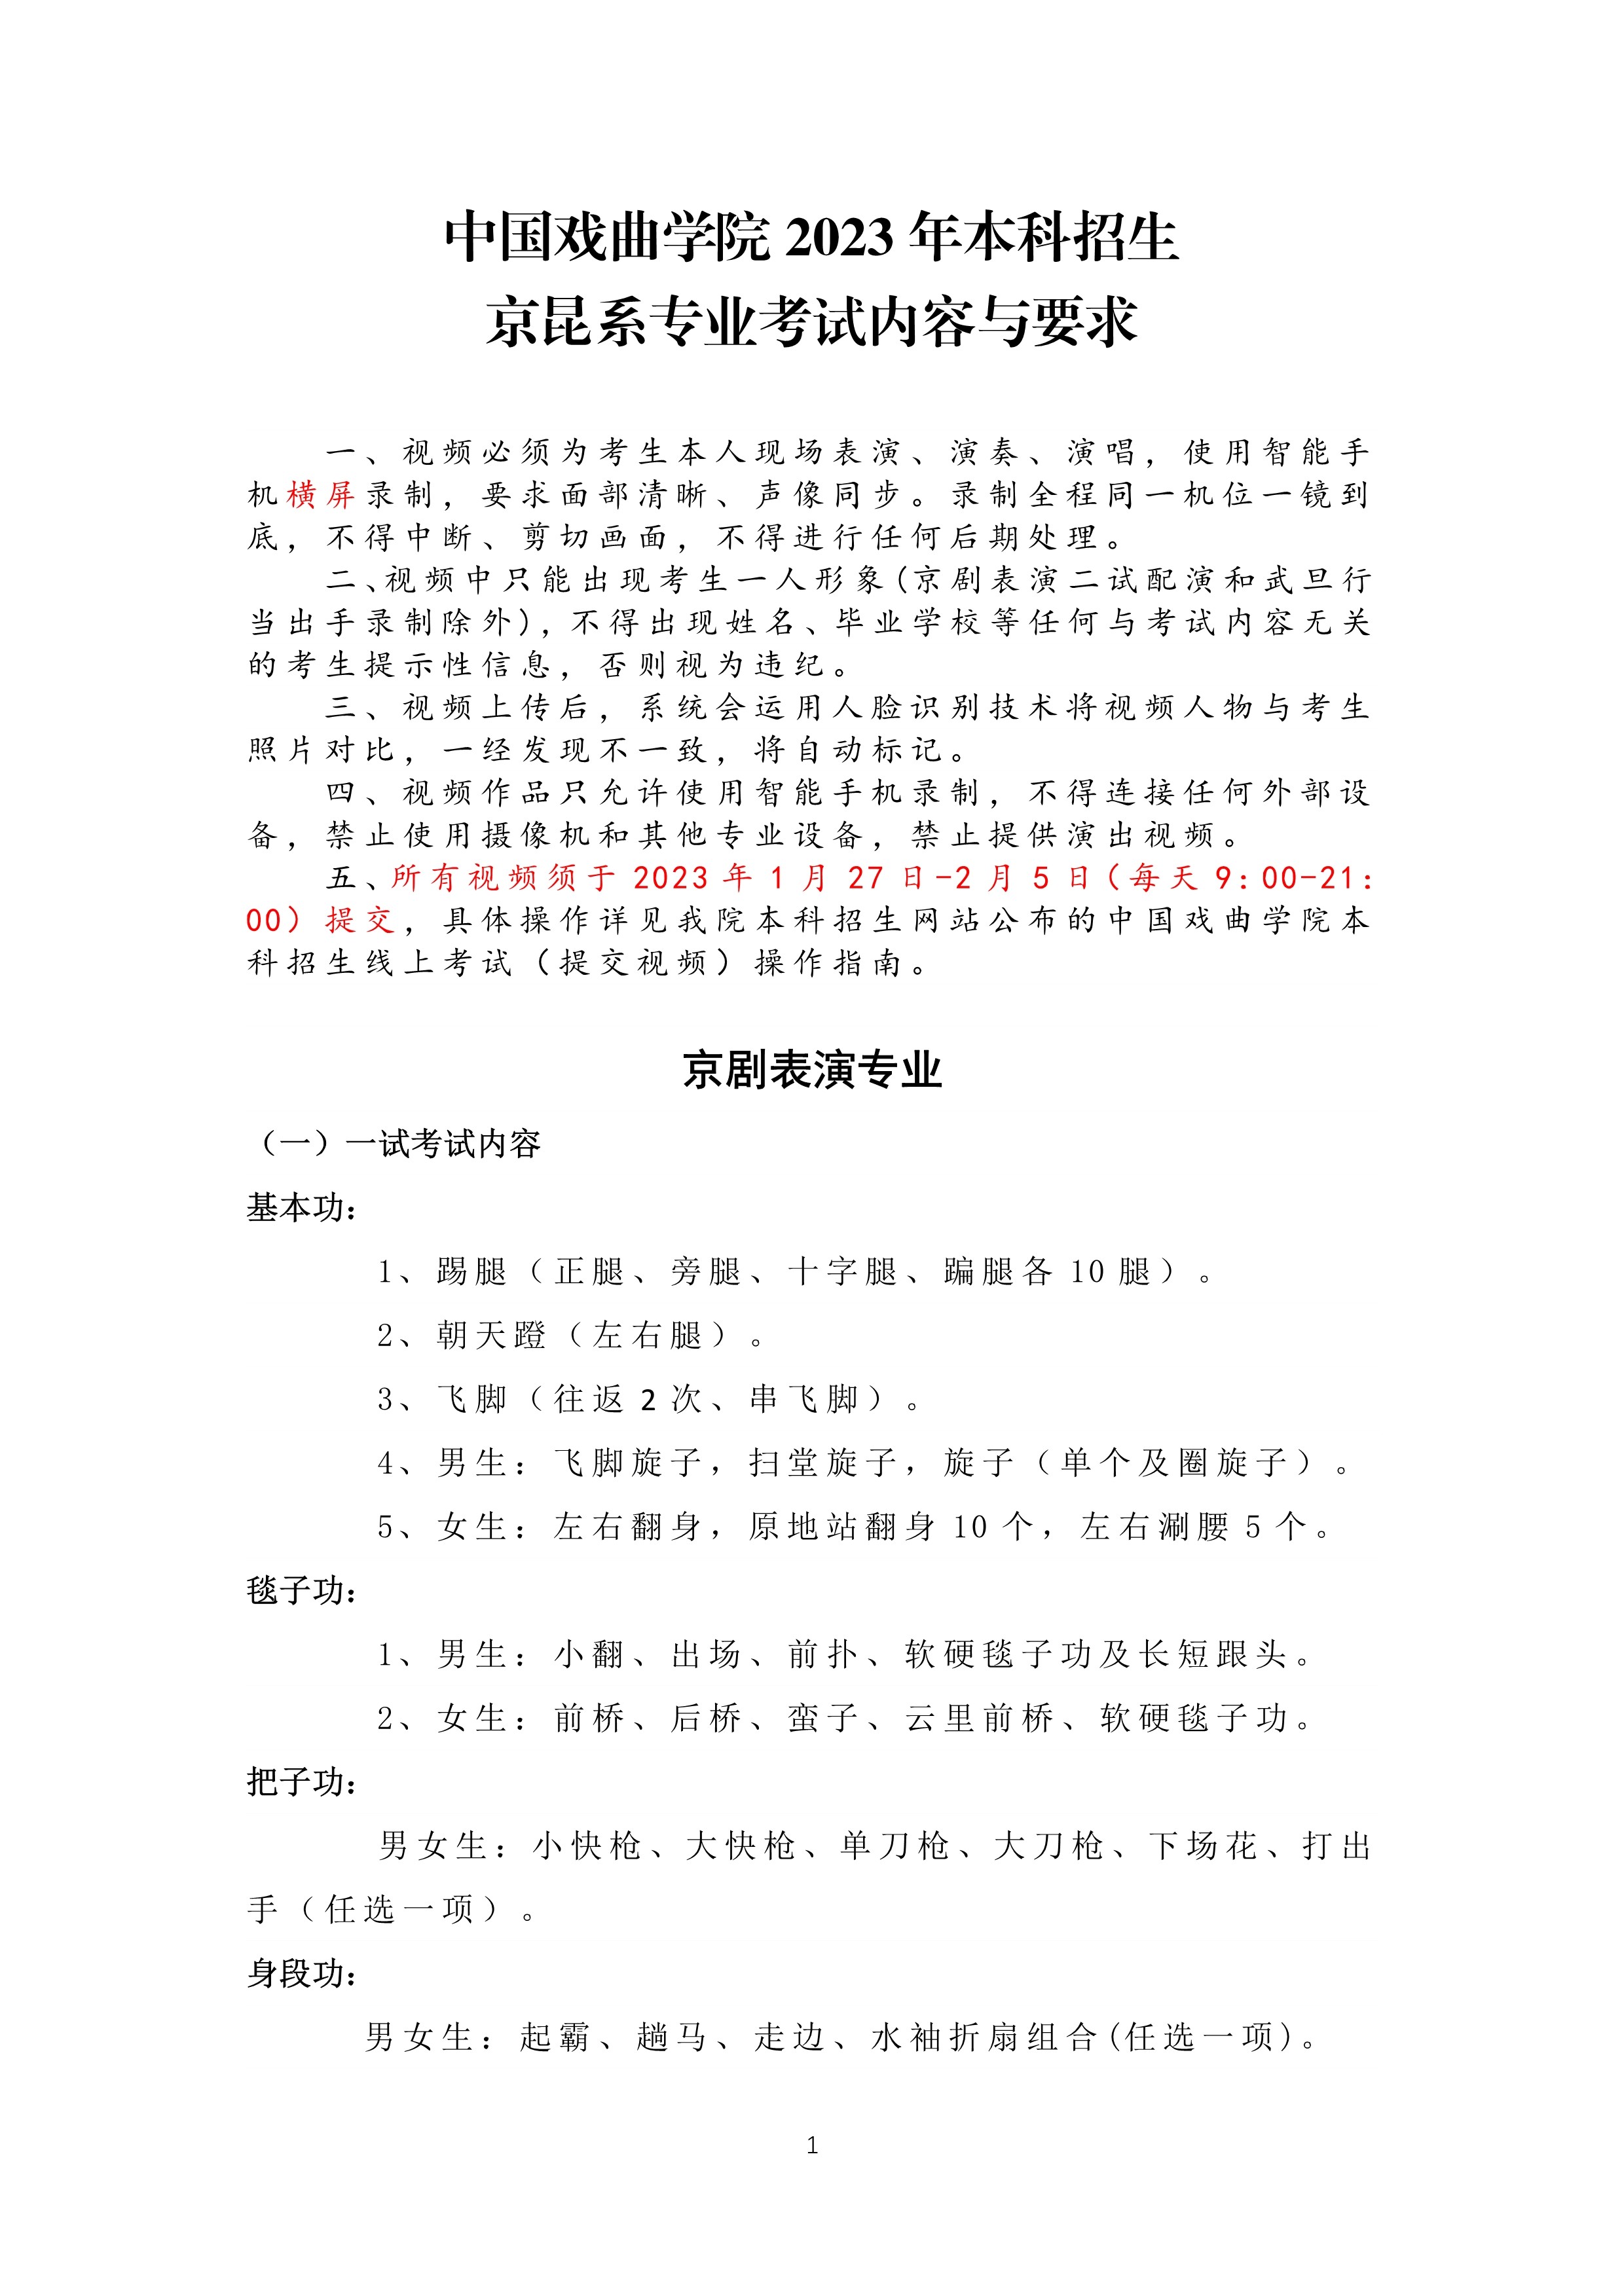 中国戏曲学院2023年本科招生京昆系专业考试内容与要求_1.jpg